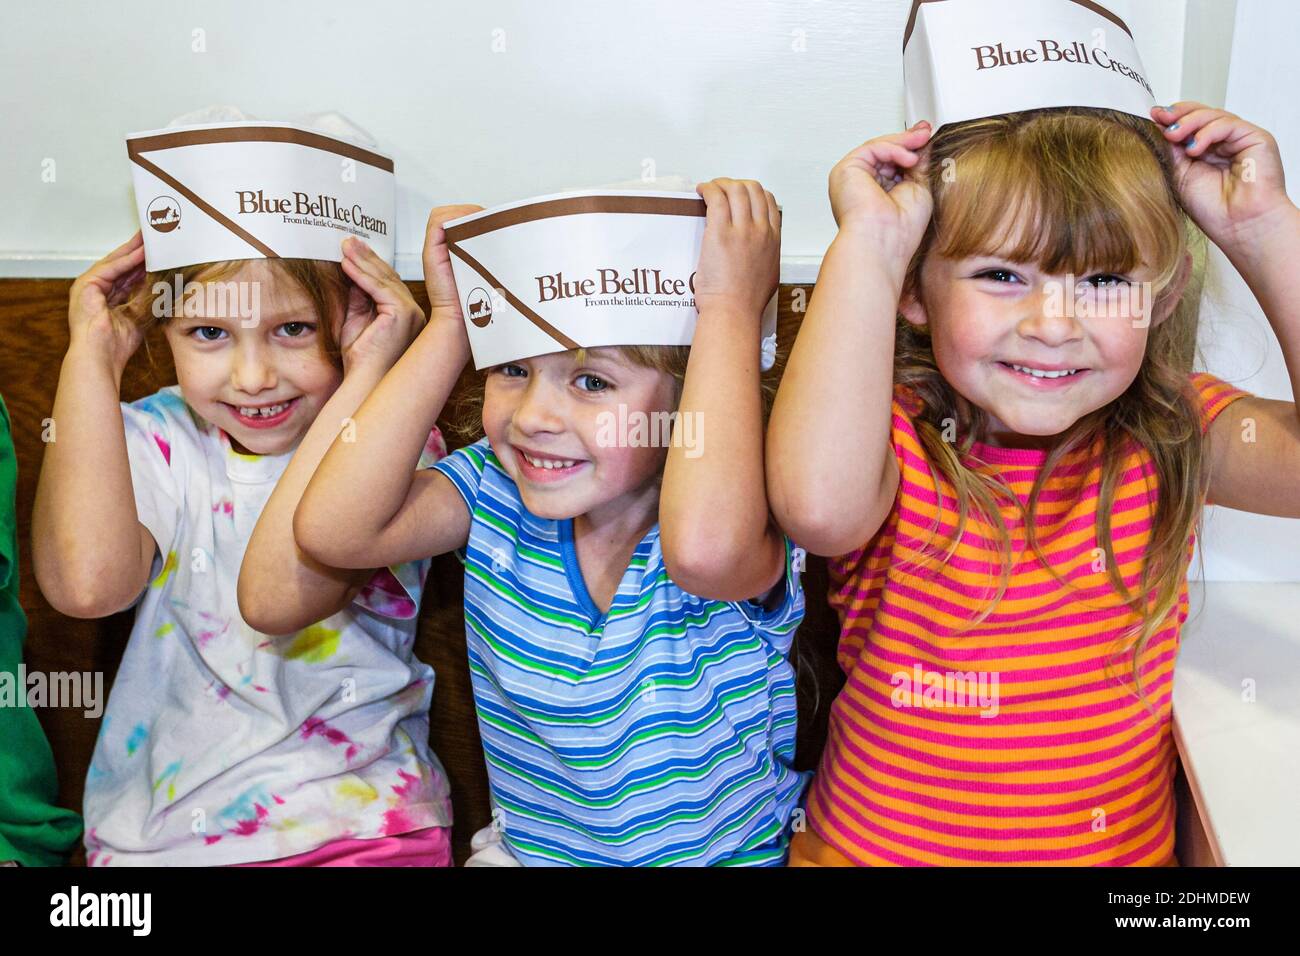 Alabama Sylacauga Blue Bell Creameries gelateria produzione di impianti, bambini ragazze tour scuola viaggio studenti campo indossando cappelli, Foto Stock